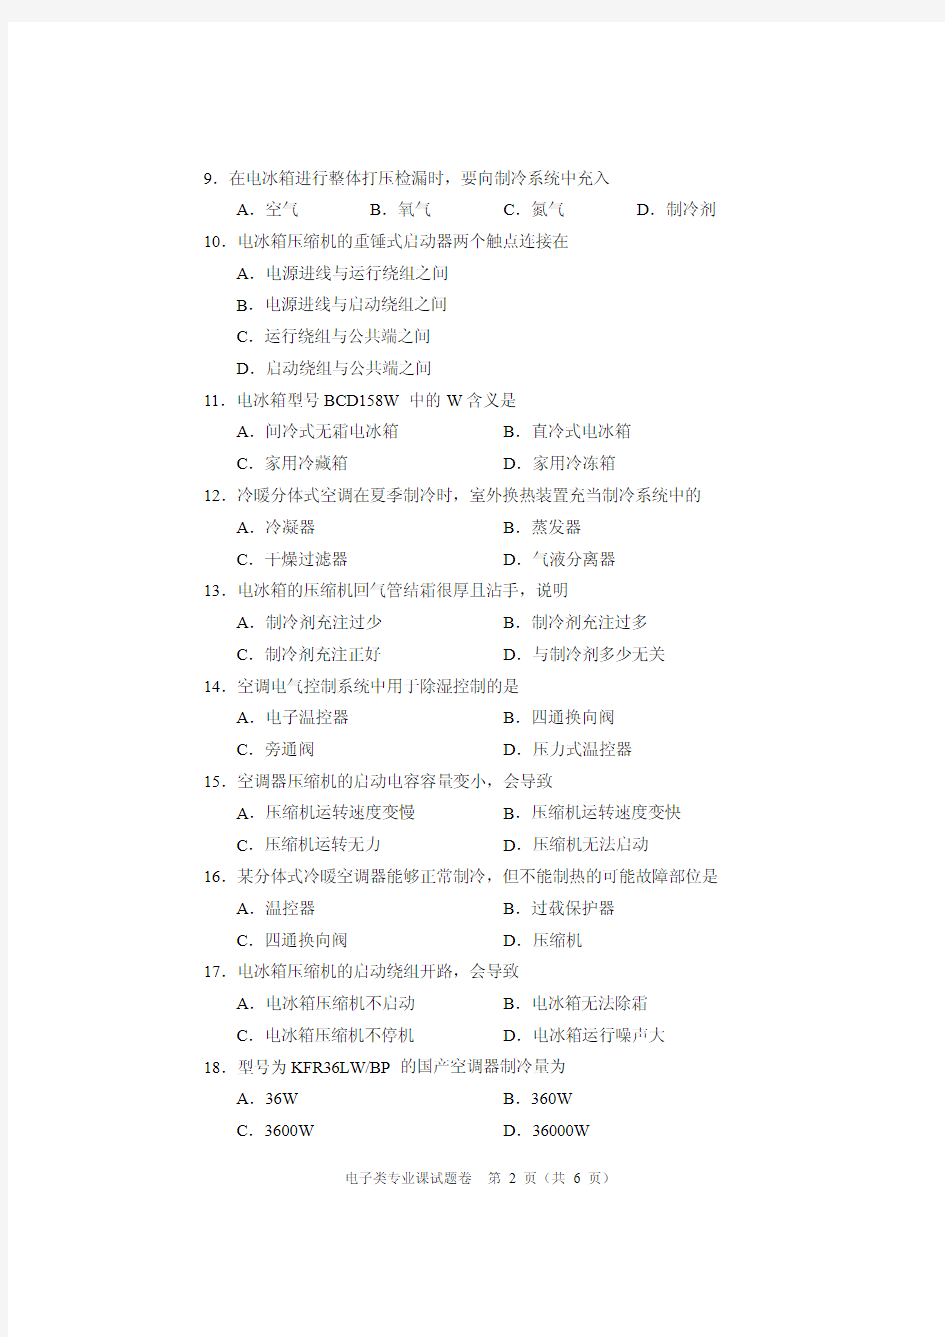 2016河南省中等职业学校年电子类专业课试题卷